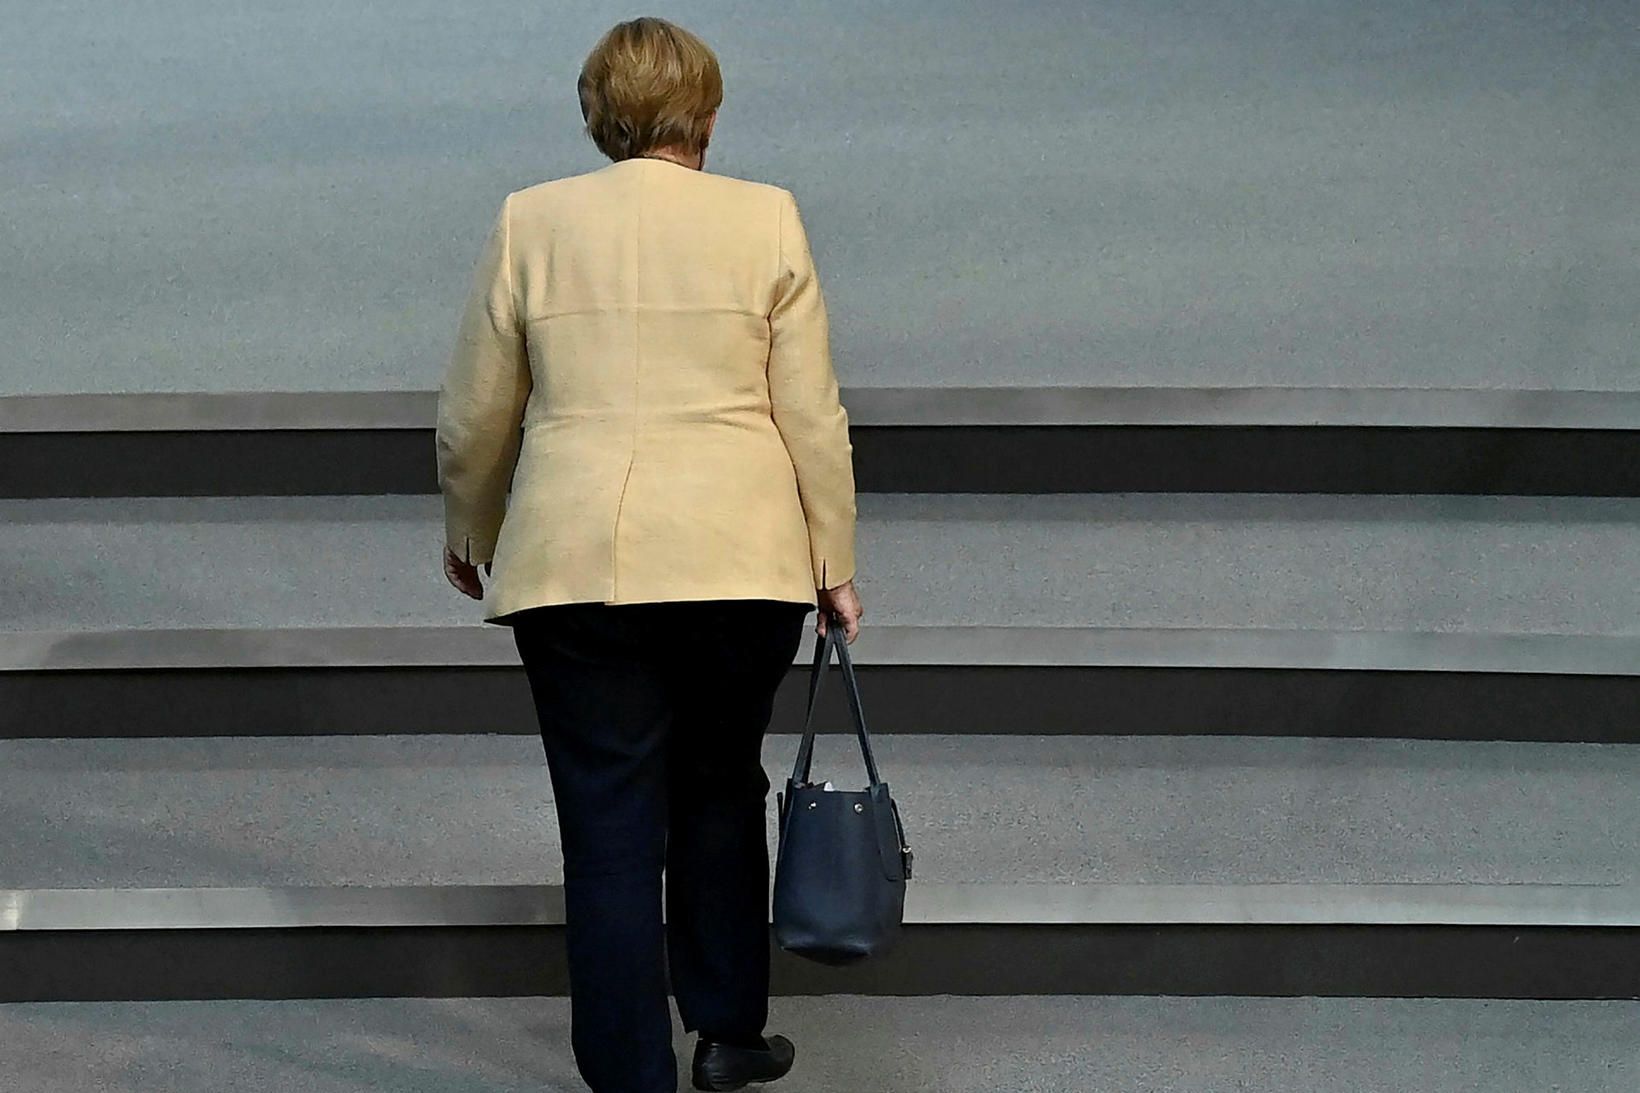 Angela Merkel ræðir við leiðtoga ríkjanna 16 um samrýmingu sóttvarnaaðgerða …